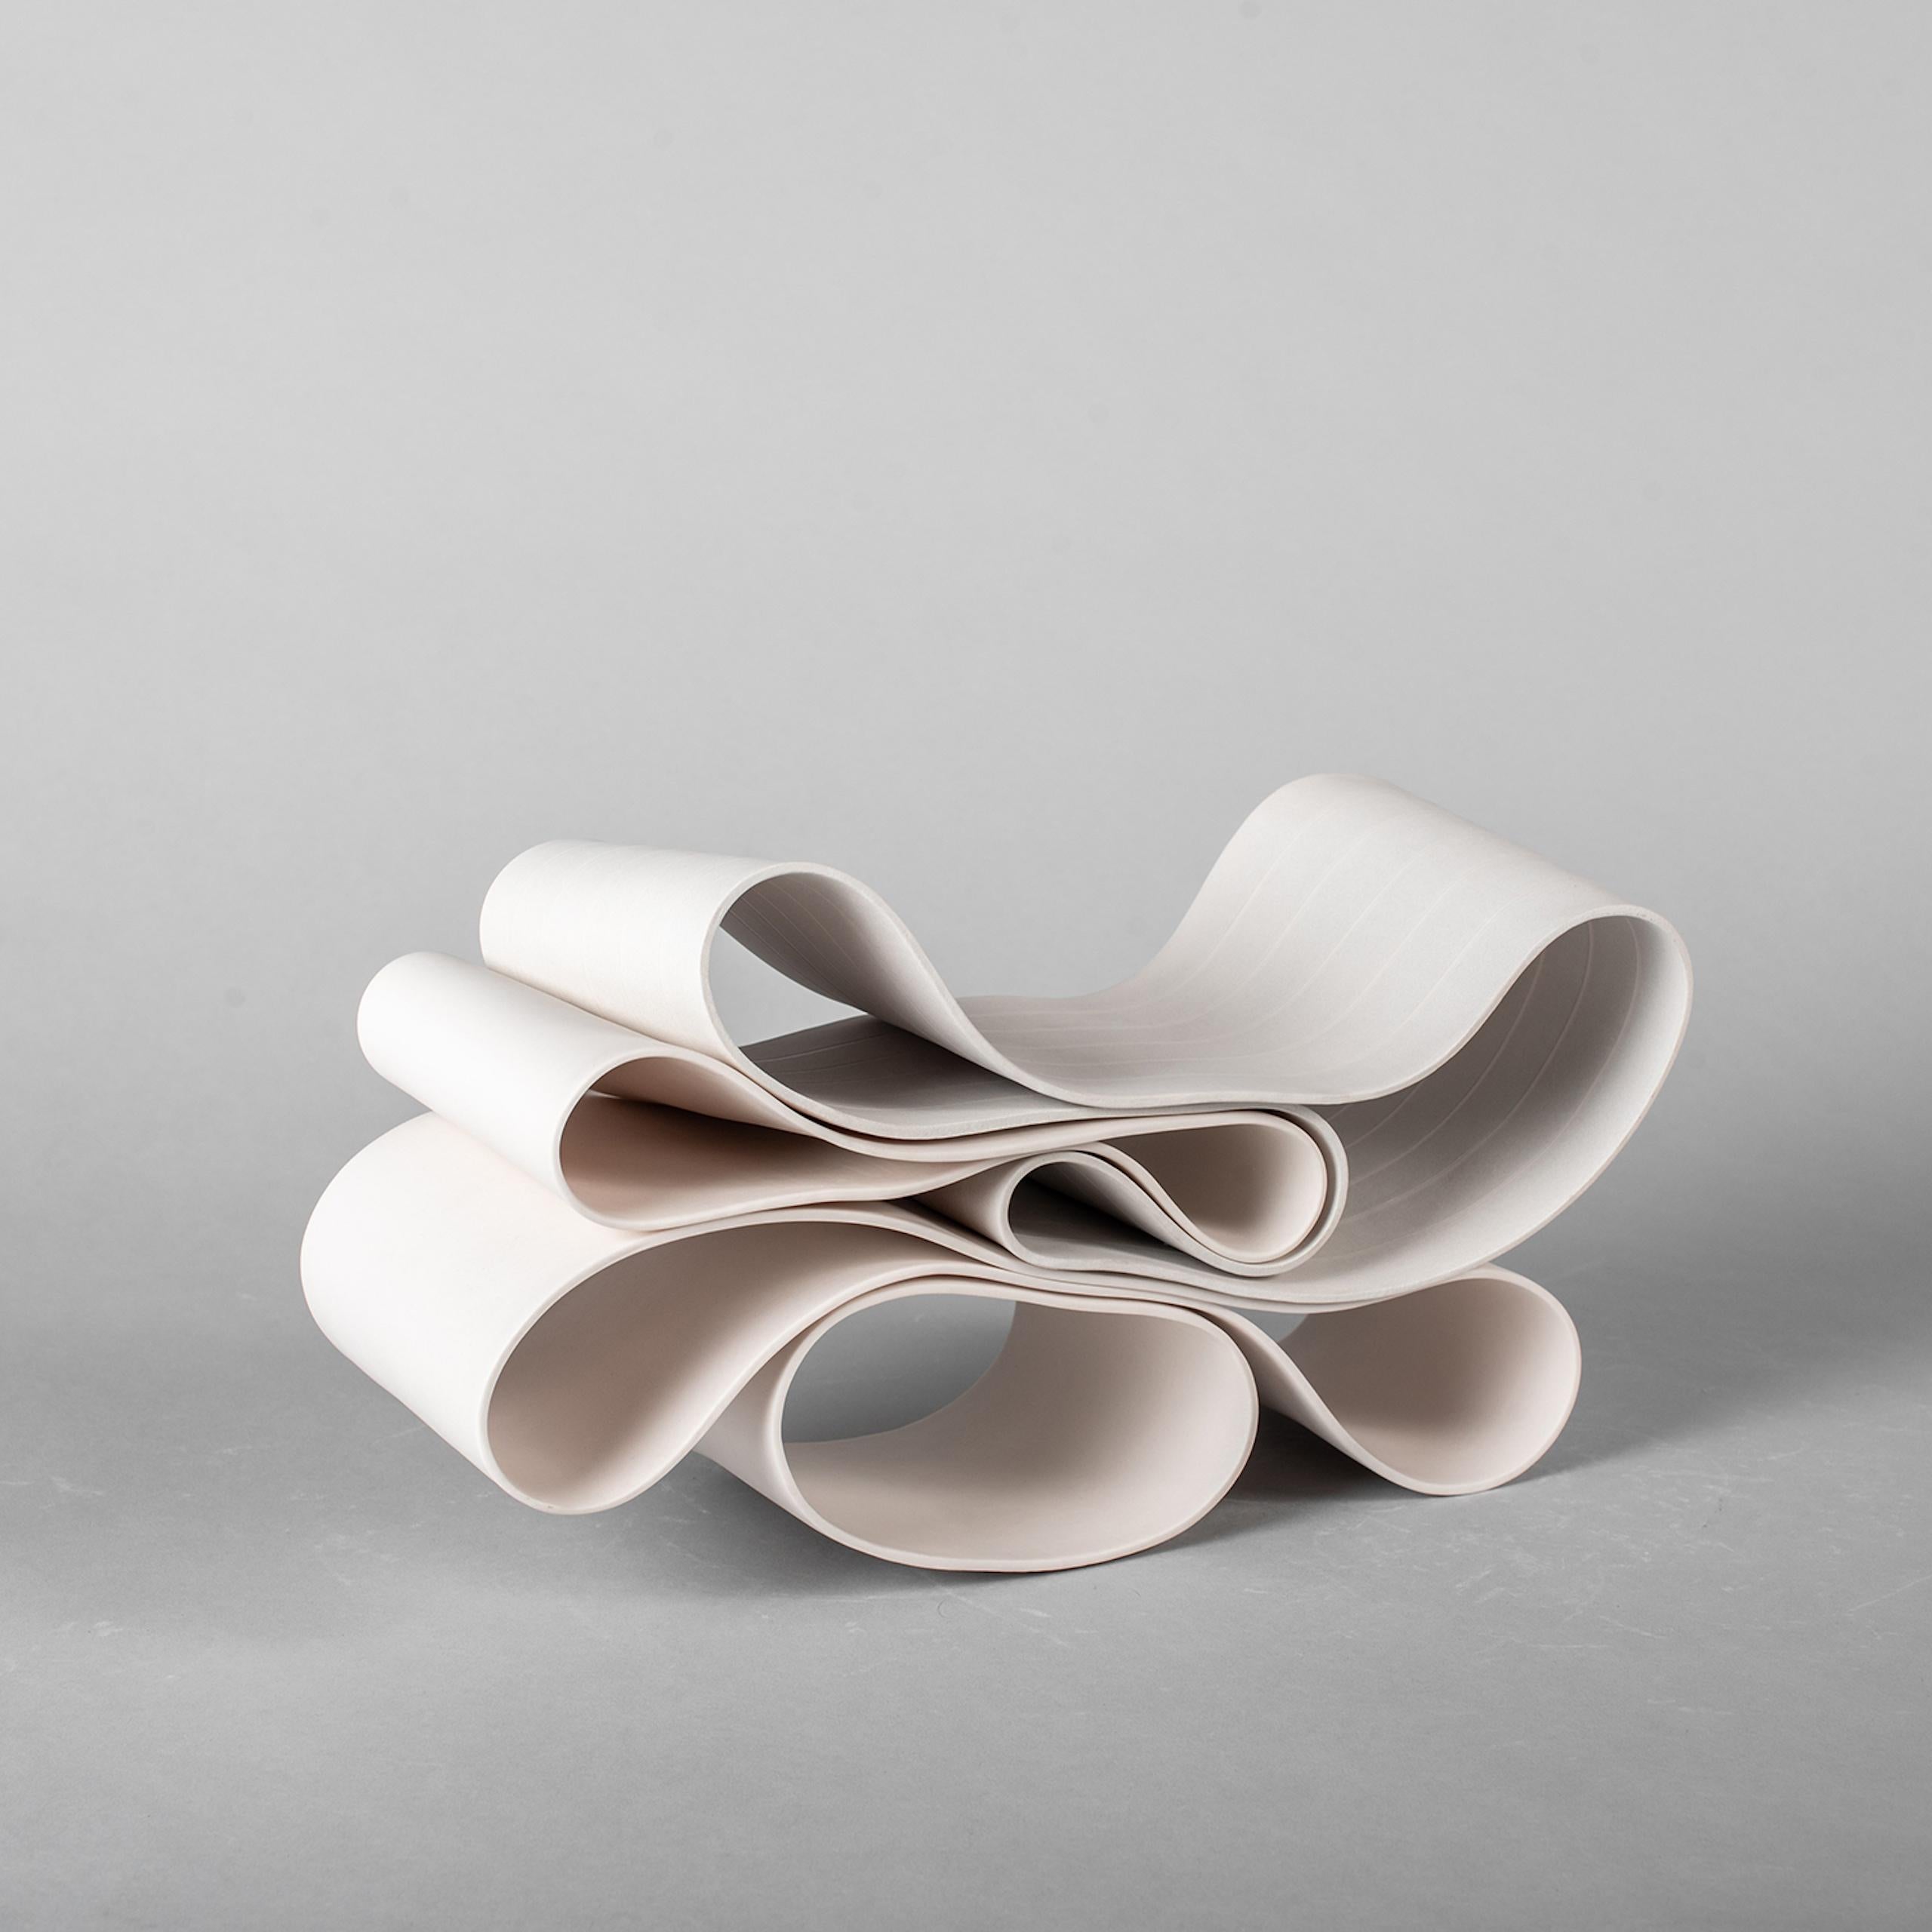 Folding in Motion 10 ist eine einzigartige Papier-Porzellan-Skulptur des zeitgenössischen Künstlers Simcha Even-Chen mit den Maßen 16 cm × 30 cm × 11 cm (6,3 × 11,8 × 4,3 in). Die Skulptur ist signiert und wird mit einem Echtheitszertifikat